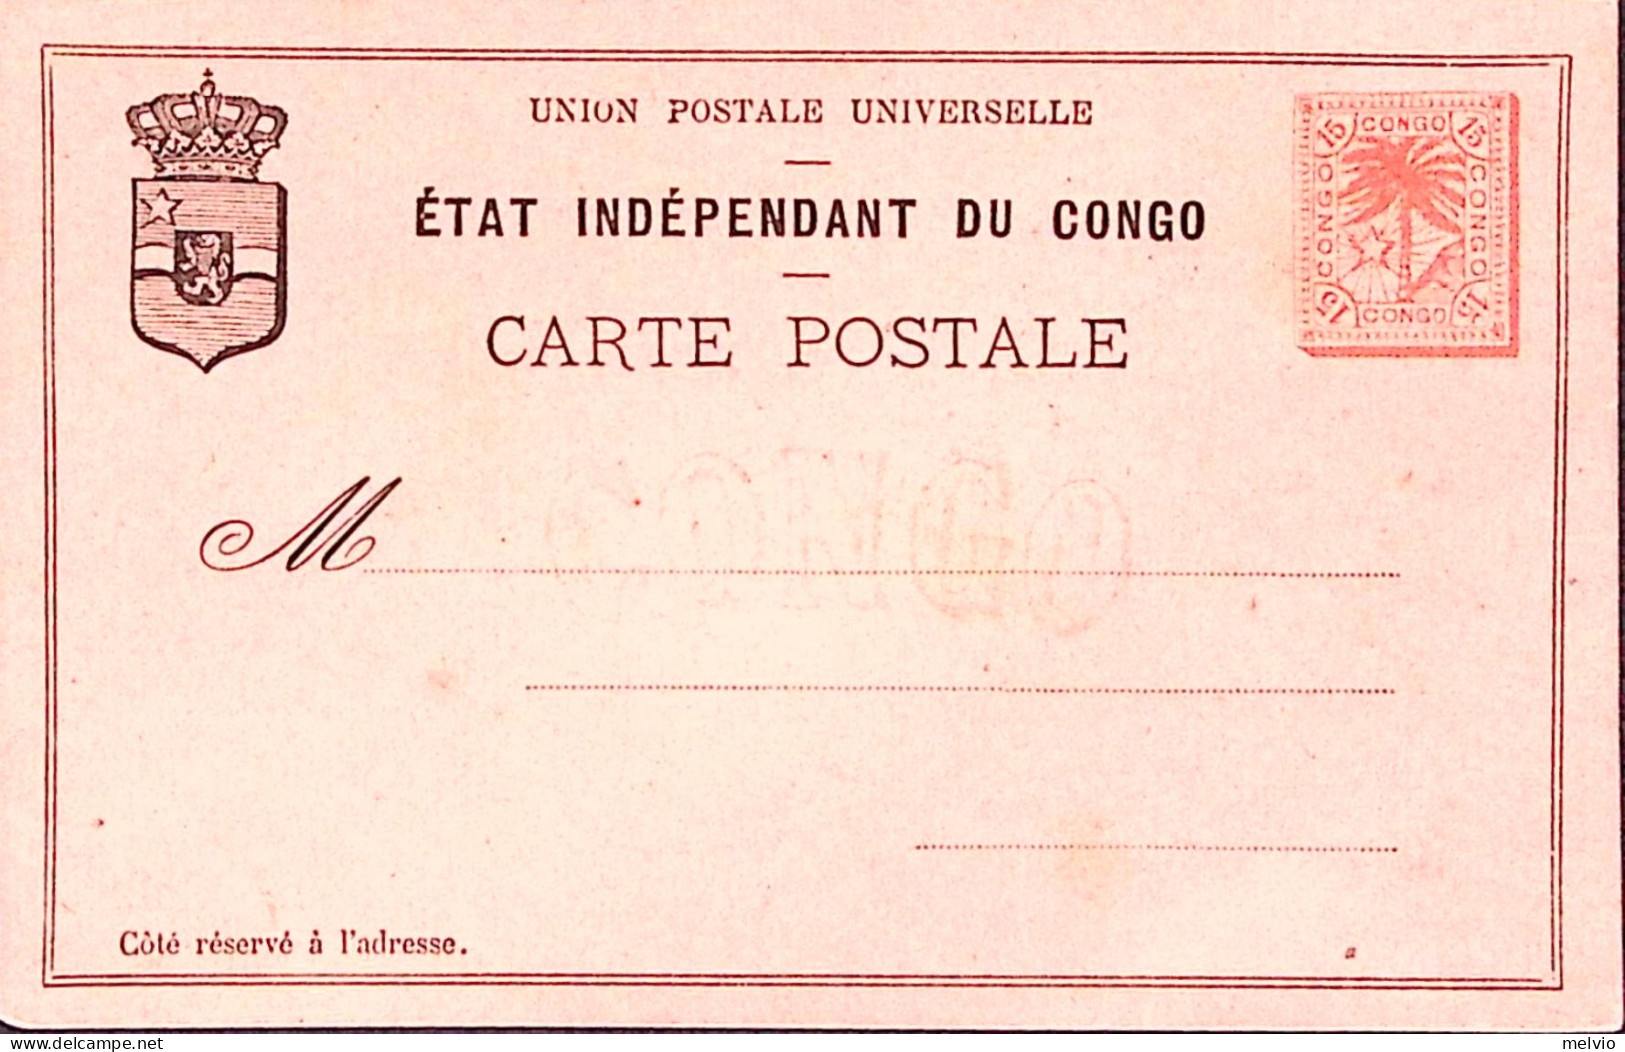 1900circa-Stato Indipendente del Congo intero postale nuovo